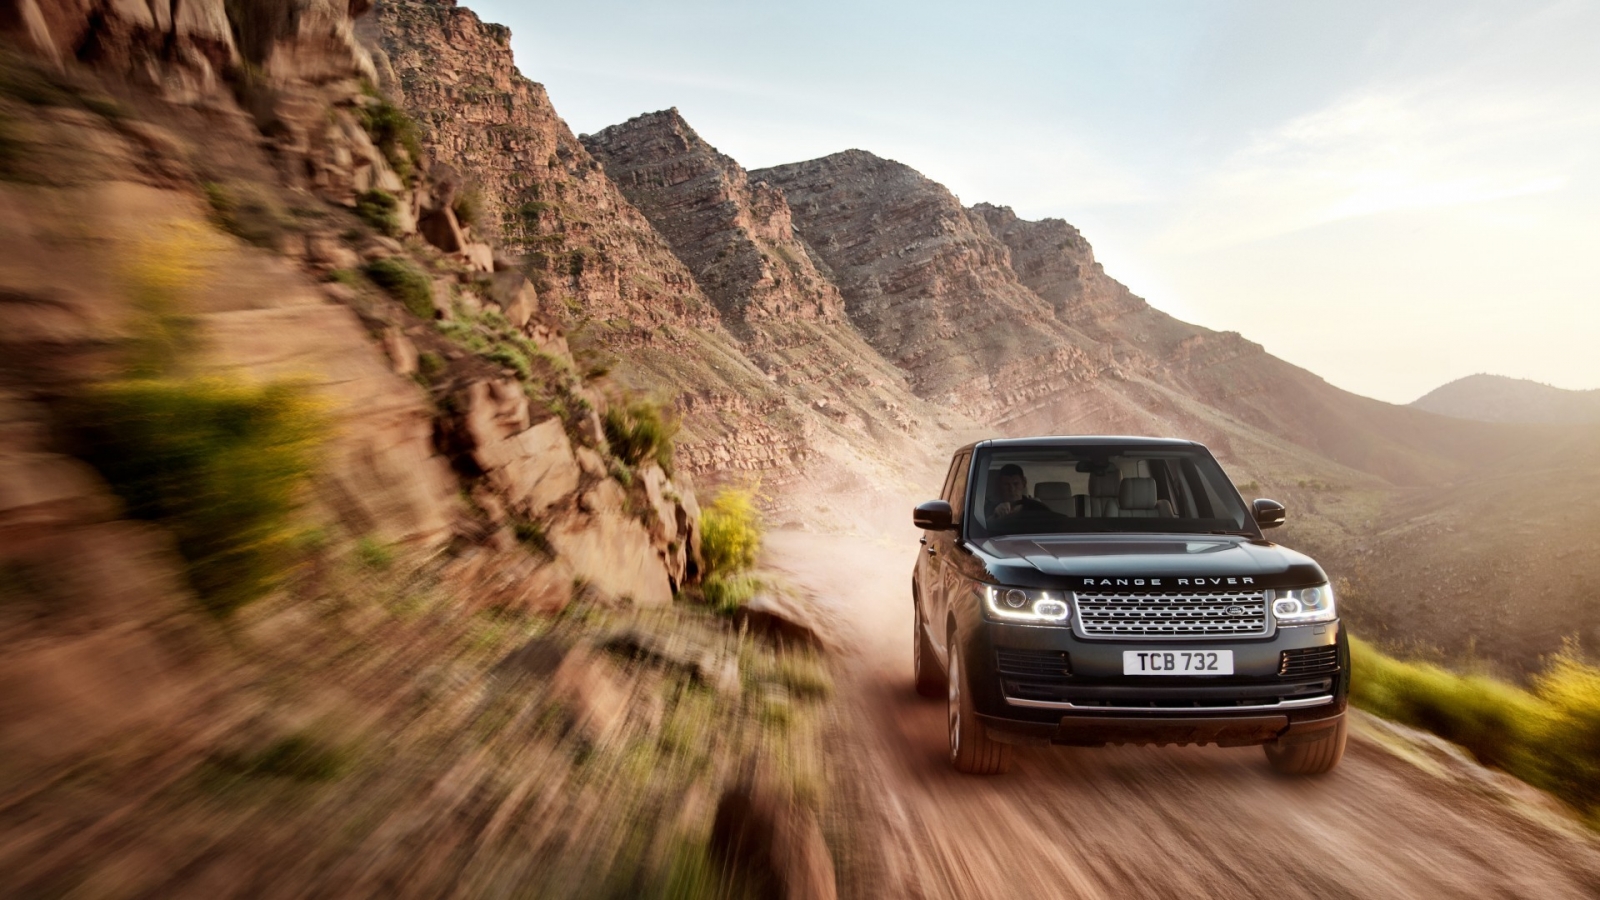 New Black Range Rover on Speed for 1600 x 900 HDTV resolution